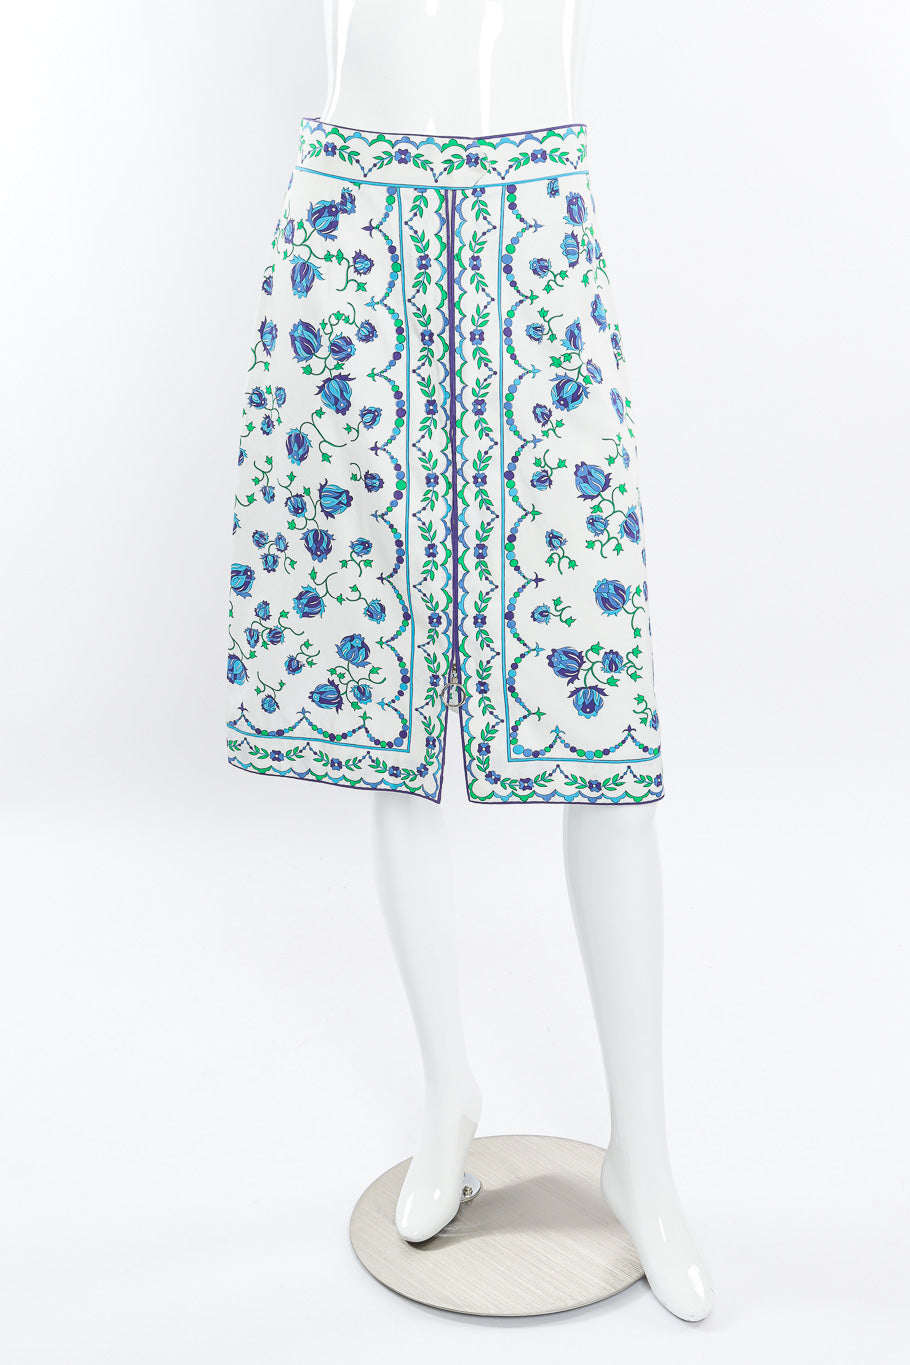 Vintage Emilio Pucci Zip up A-line Skirt front view on mannequin @Recessla